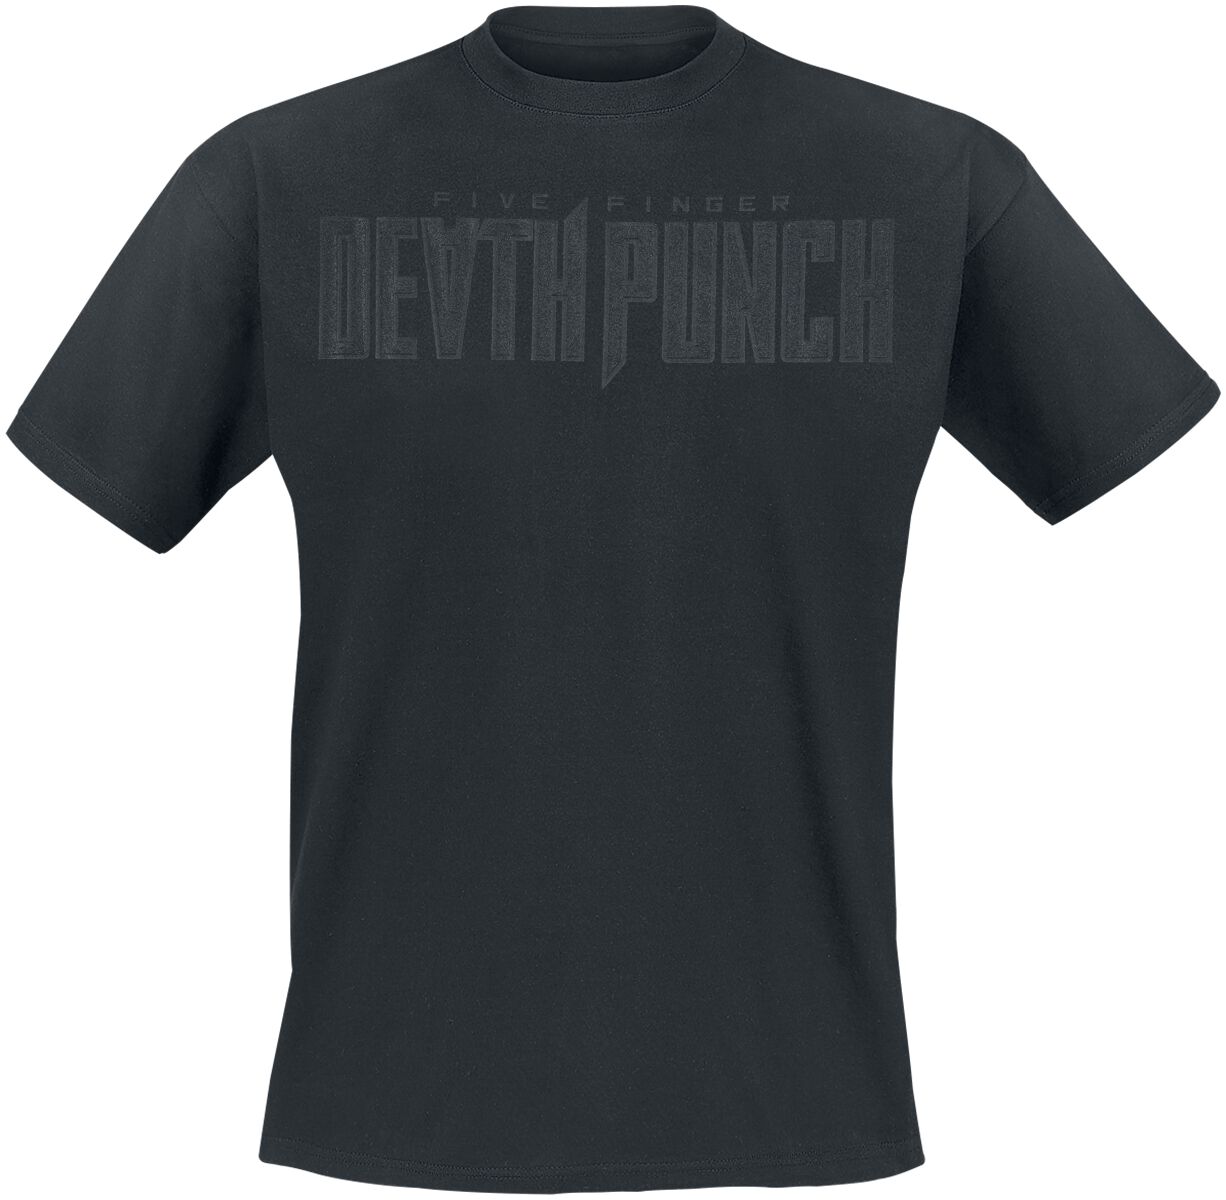 Five Finger Death Punch T-Shirt - Black On Black Knuckles V2 - S bis 4XL - für Männer - Größe 3XL - schwarz  - Lizenziertes Merchandise!